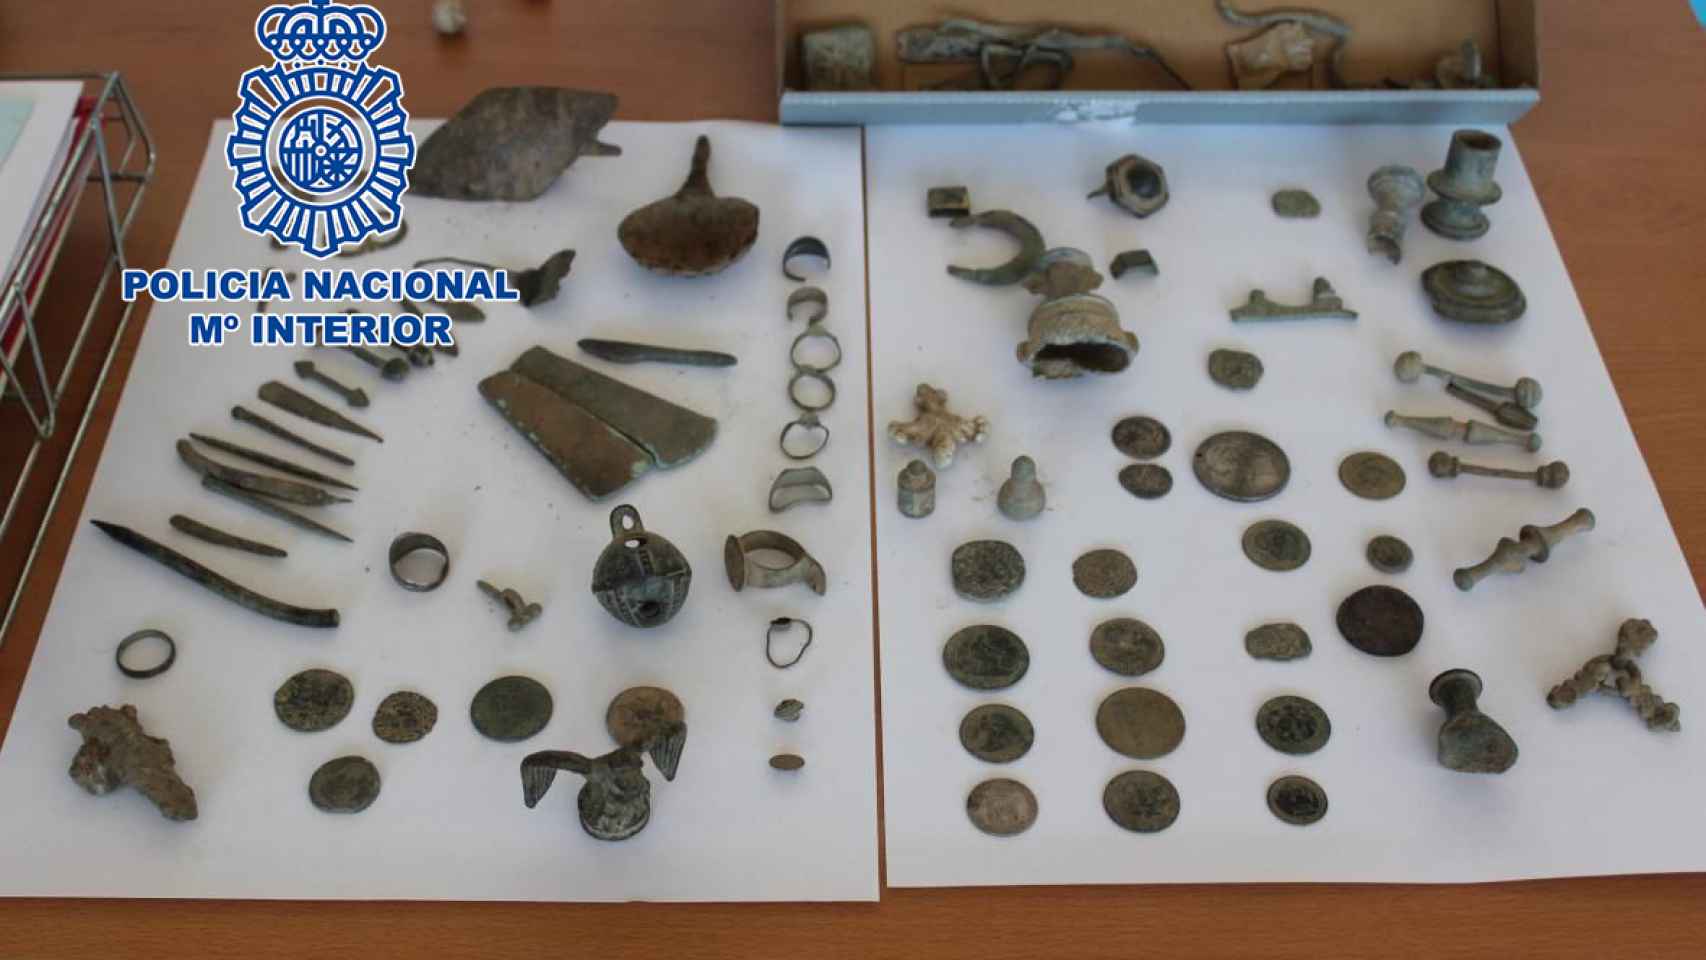 Otras de las piezas arqueológicas recuperadas durante la operación.